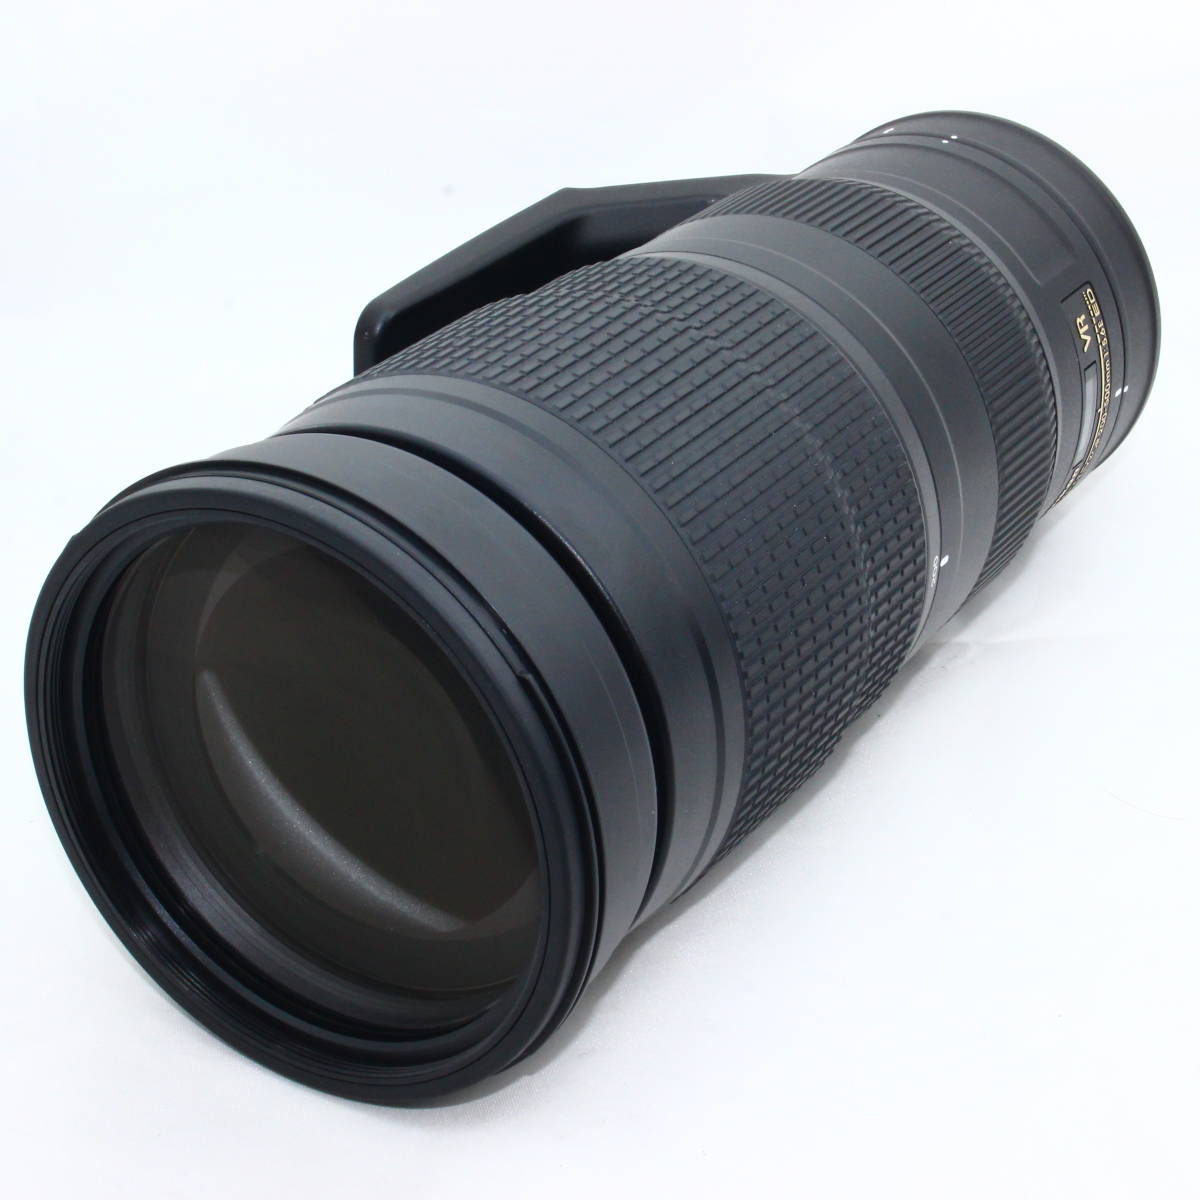 Nikon 望遠ズームレンズ AF-S NIKKOR 200-500mm f/5.6E ED VR #2302065